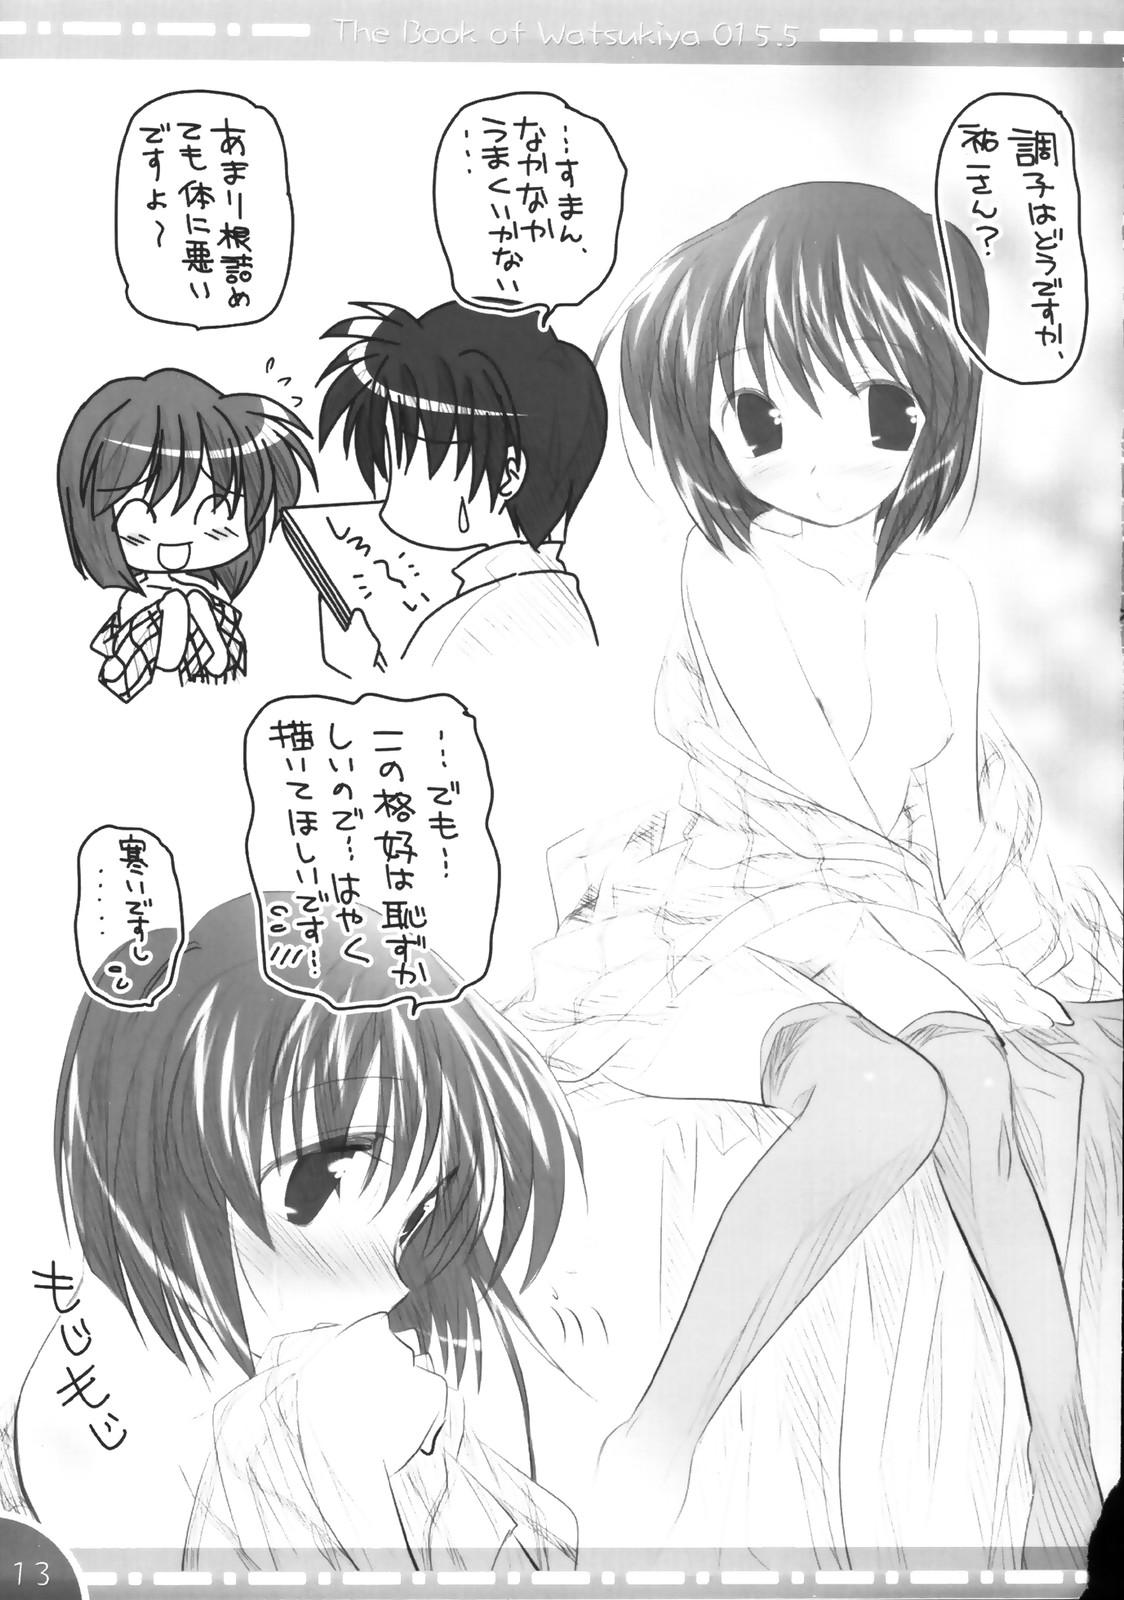 Licking - The Book of Watsukiya 015.5 - Kanon Gay Domination - Page 12